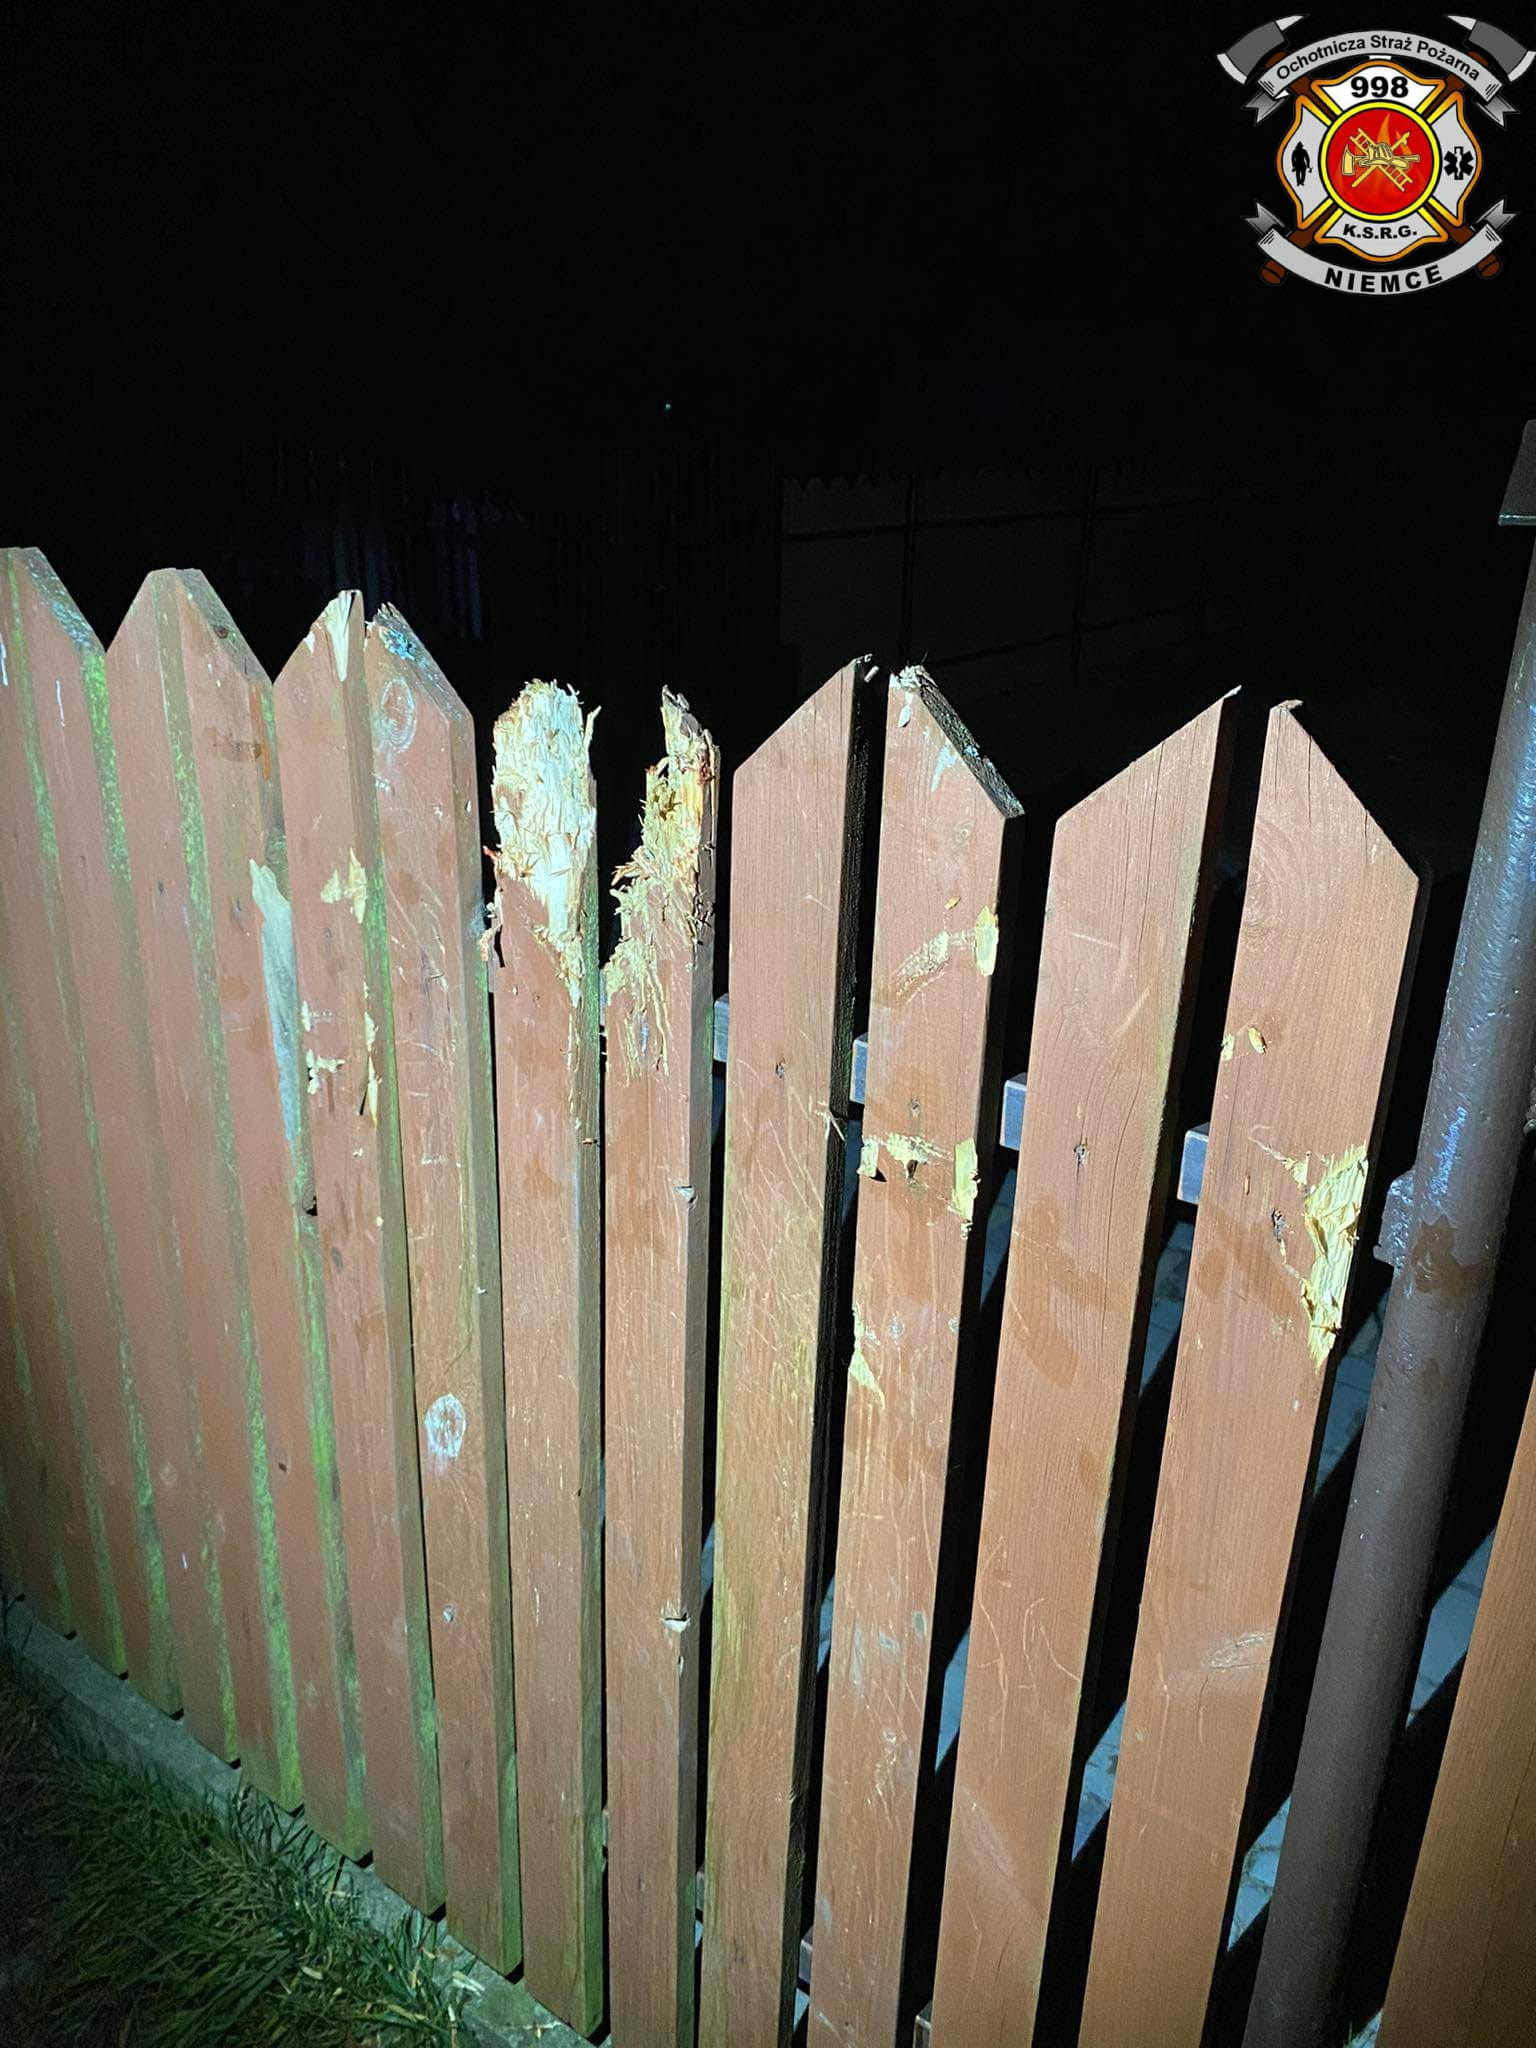 Pies chciał przeskoczyć przez ogrodzenie, łapy utkwiły mu pomiędzy sztachetami (zdjęcia)